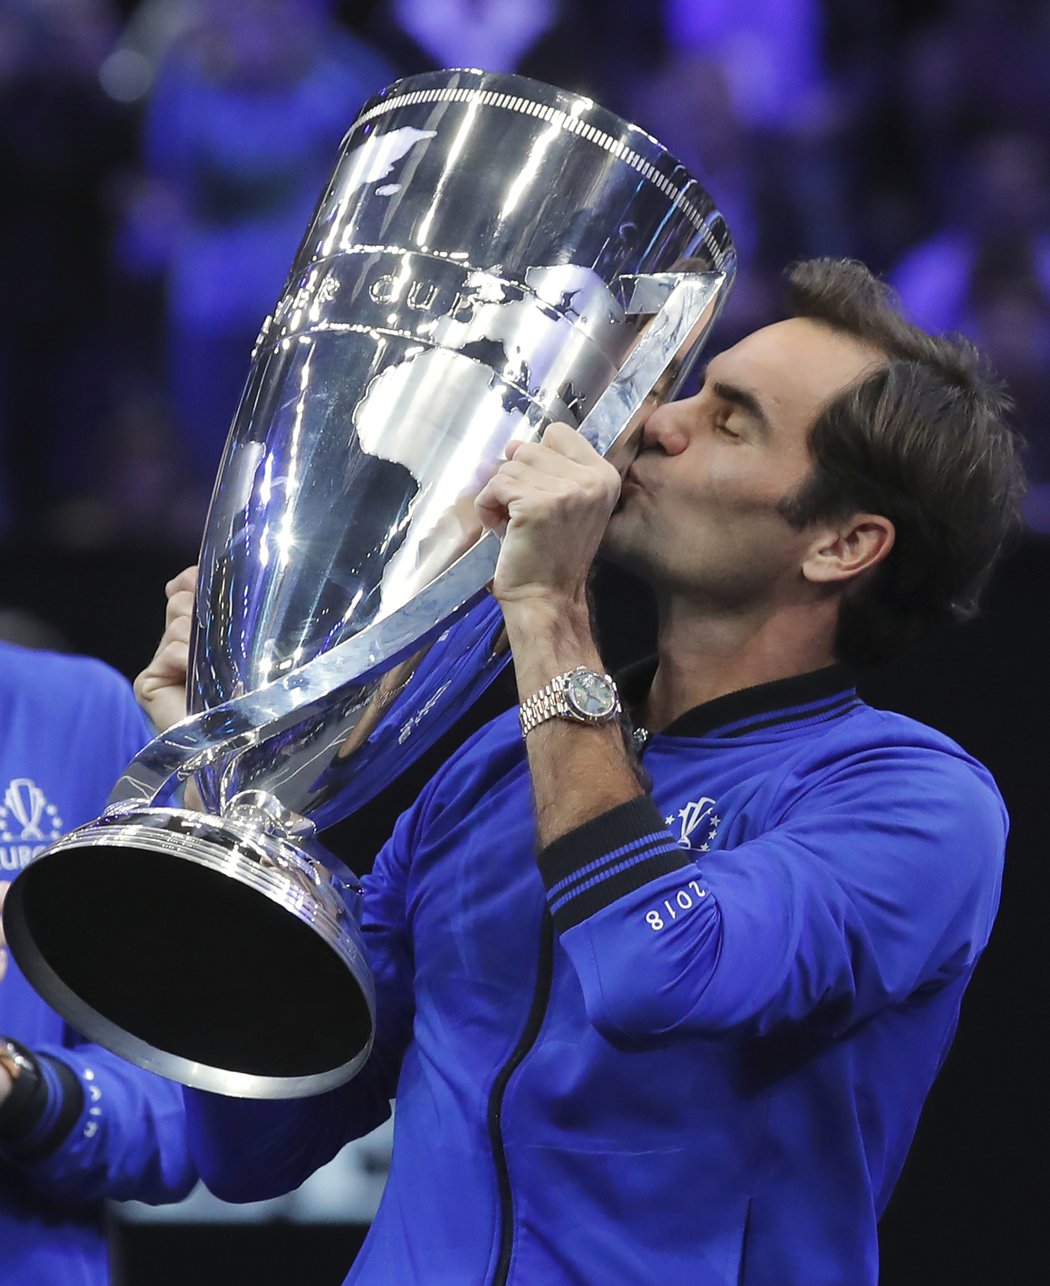 Tenisté Evropy vyhráli i druhý ročník Laver Cupu. Díky Rogeru Federerovi a Alexanderu Zverevovi porazili v Chicagu výběr světa poměrem 13:8.